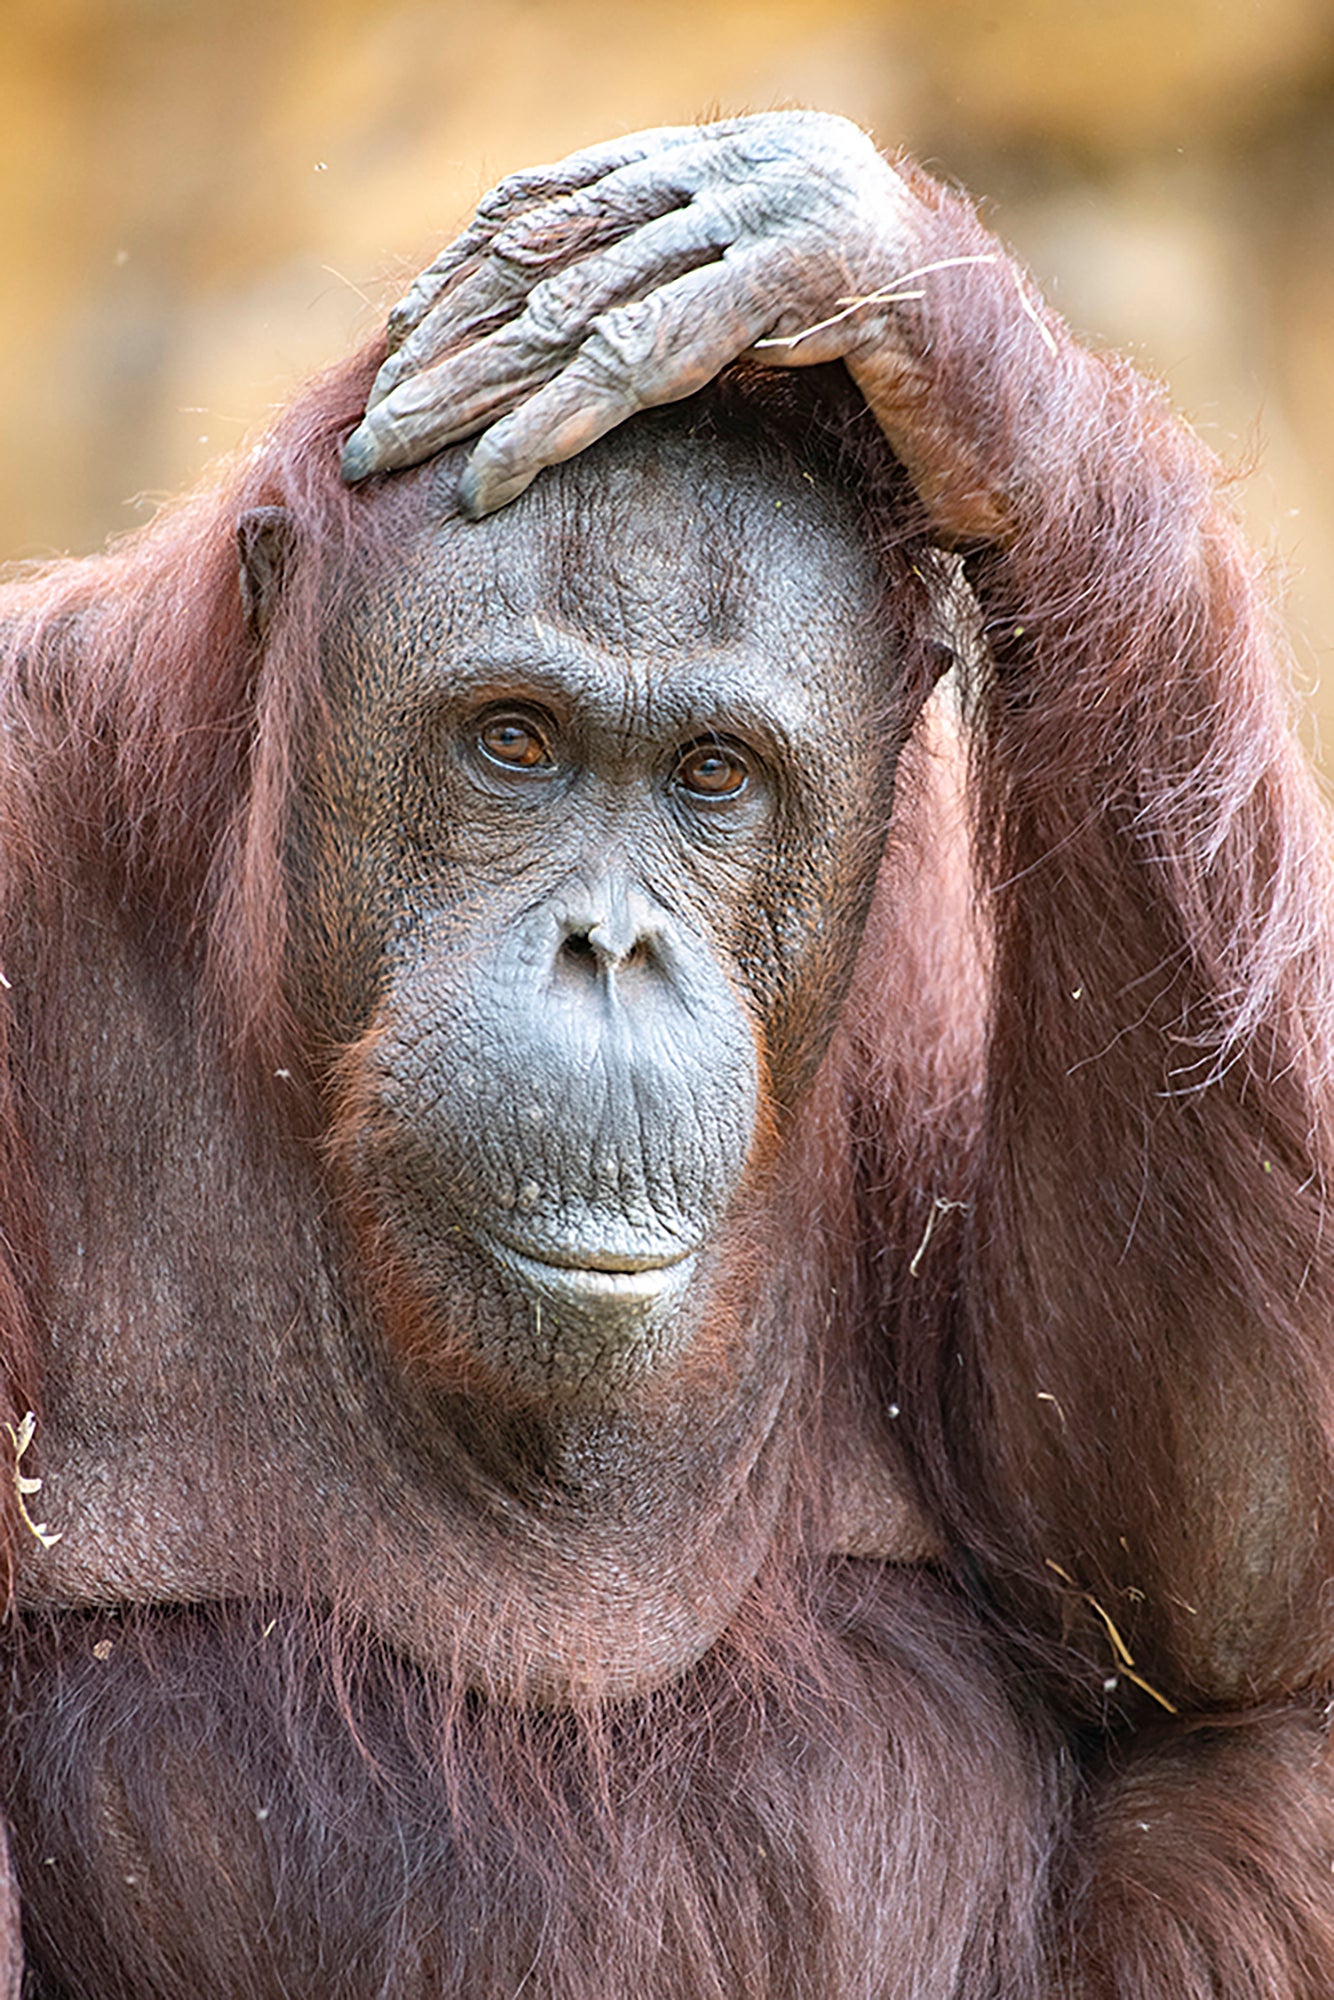 Orangutan Death